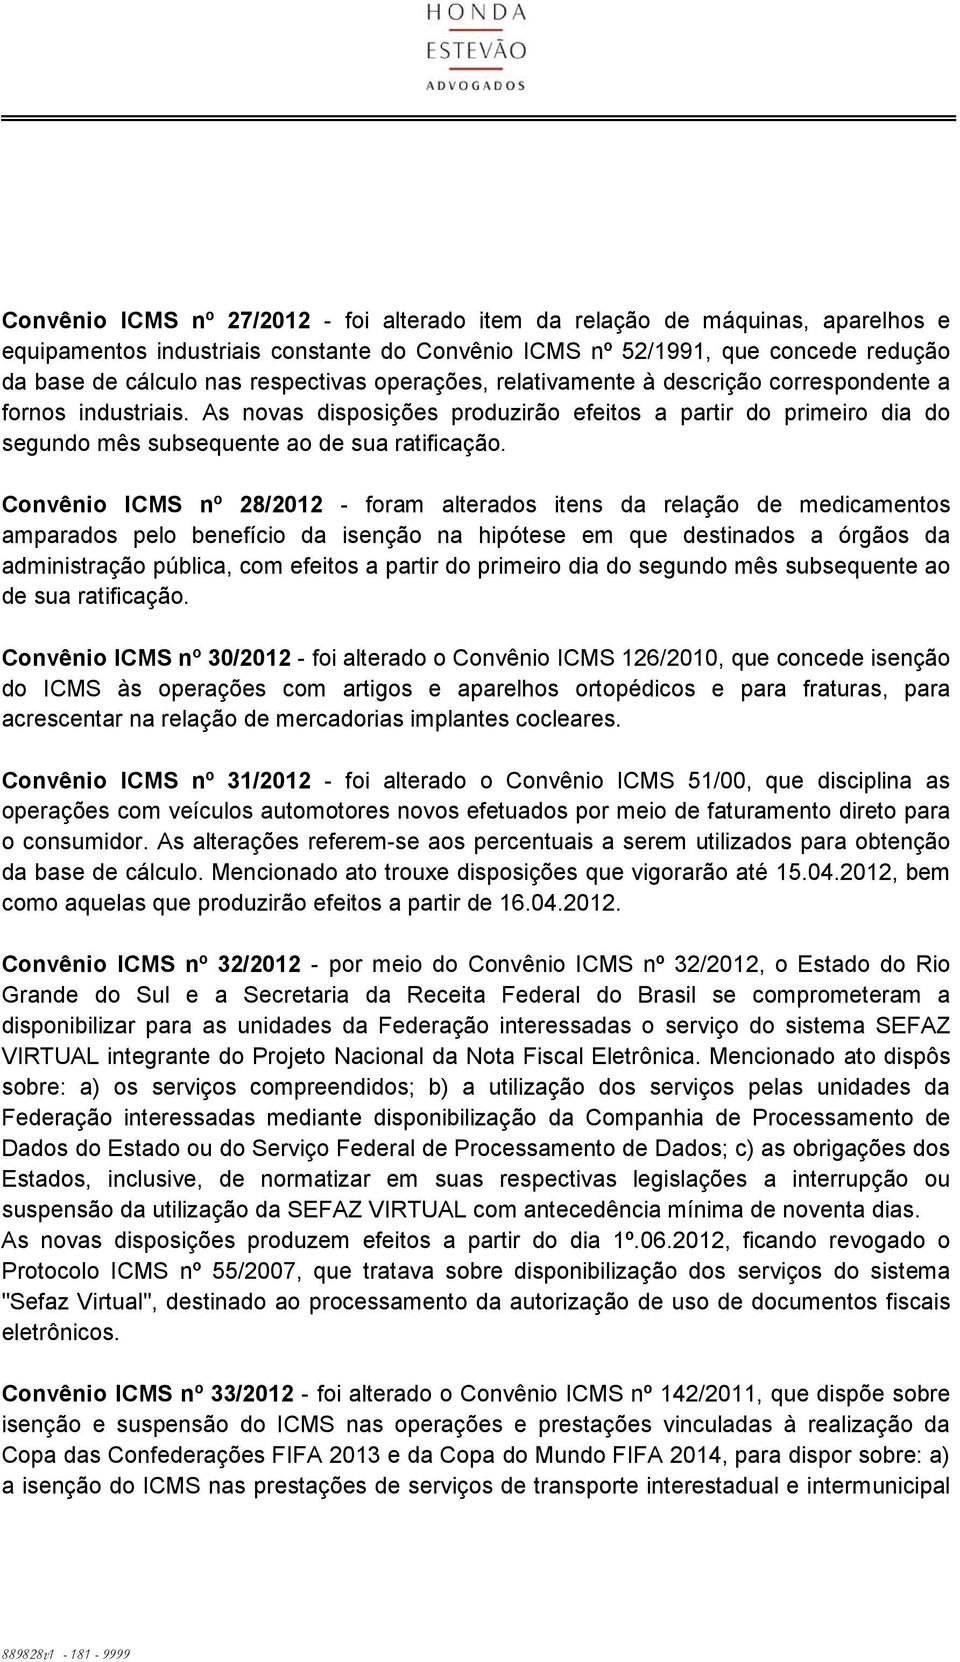 Convênio ICMS nº 28/2012 - foram alterados itens da relação de medicamentos amparados pelo benefício da isenção na hipótese em que destinados a órgãos da administração pública, com efeitos a partir